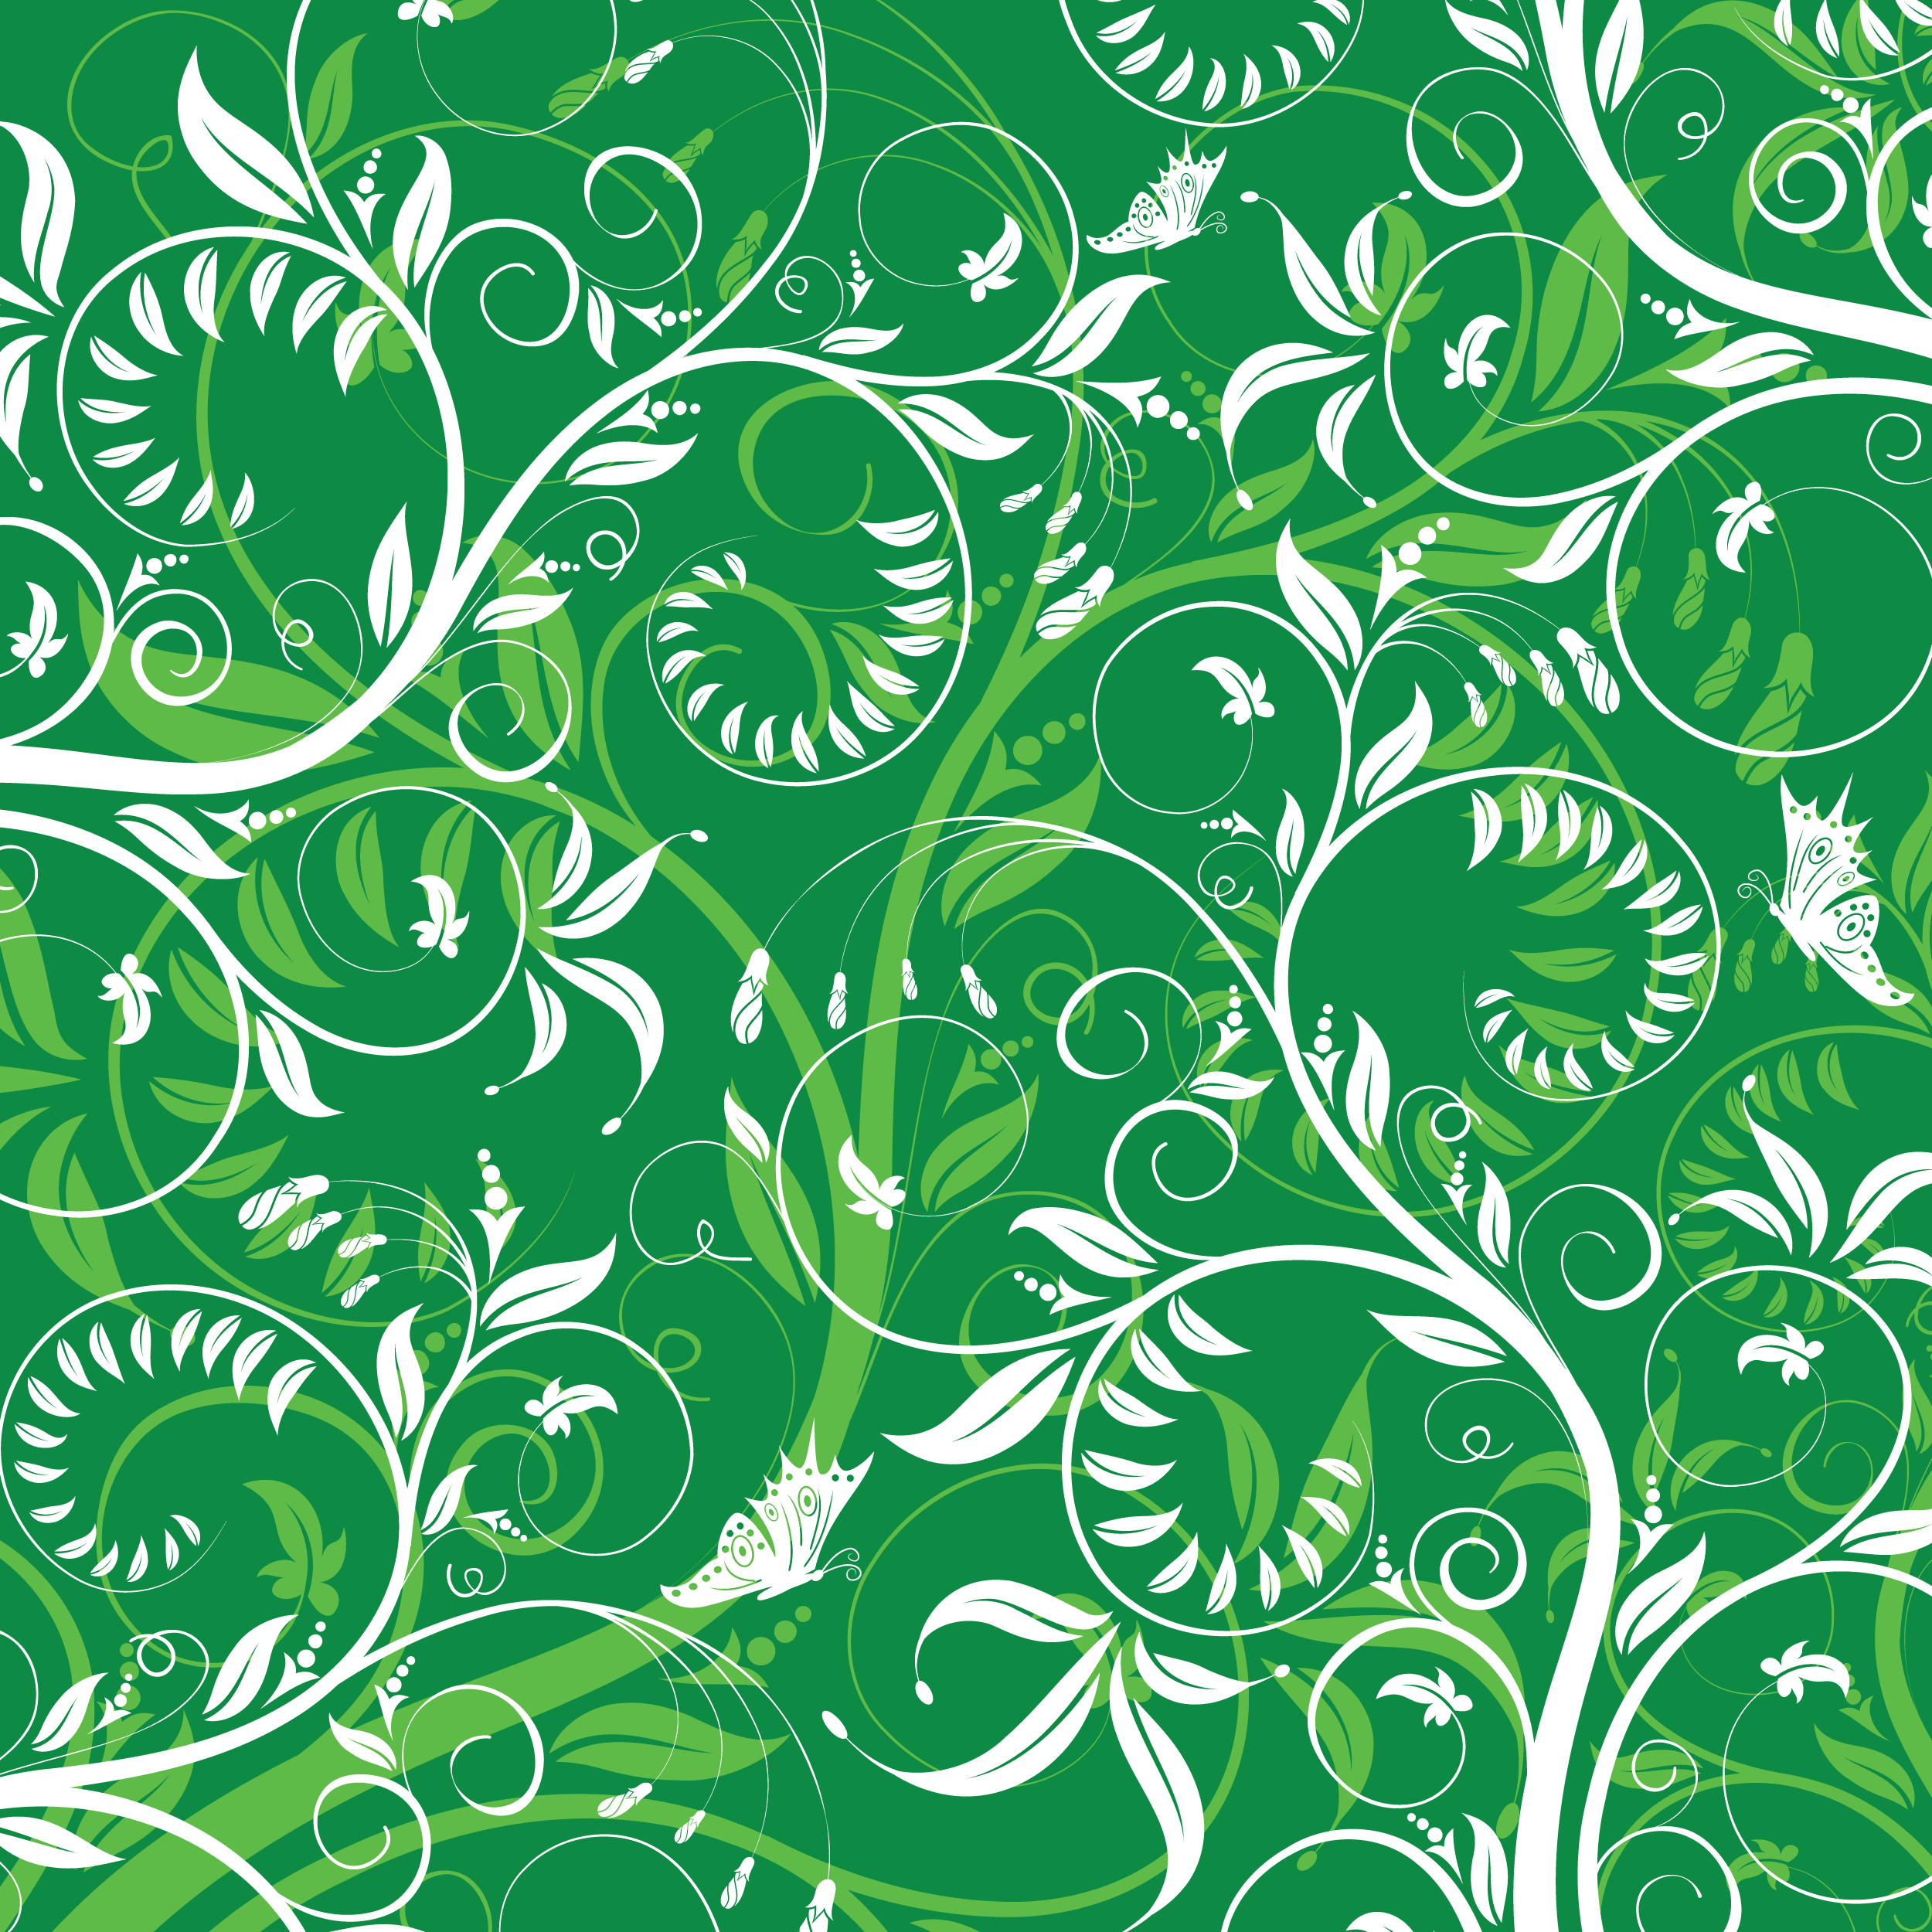 葉っぱや草木のイラスト 壁紙 背景no 041 白と緑 茎蔓 蝶